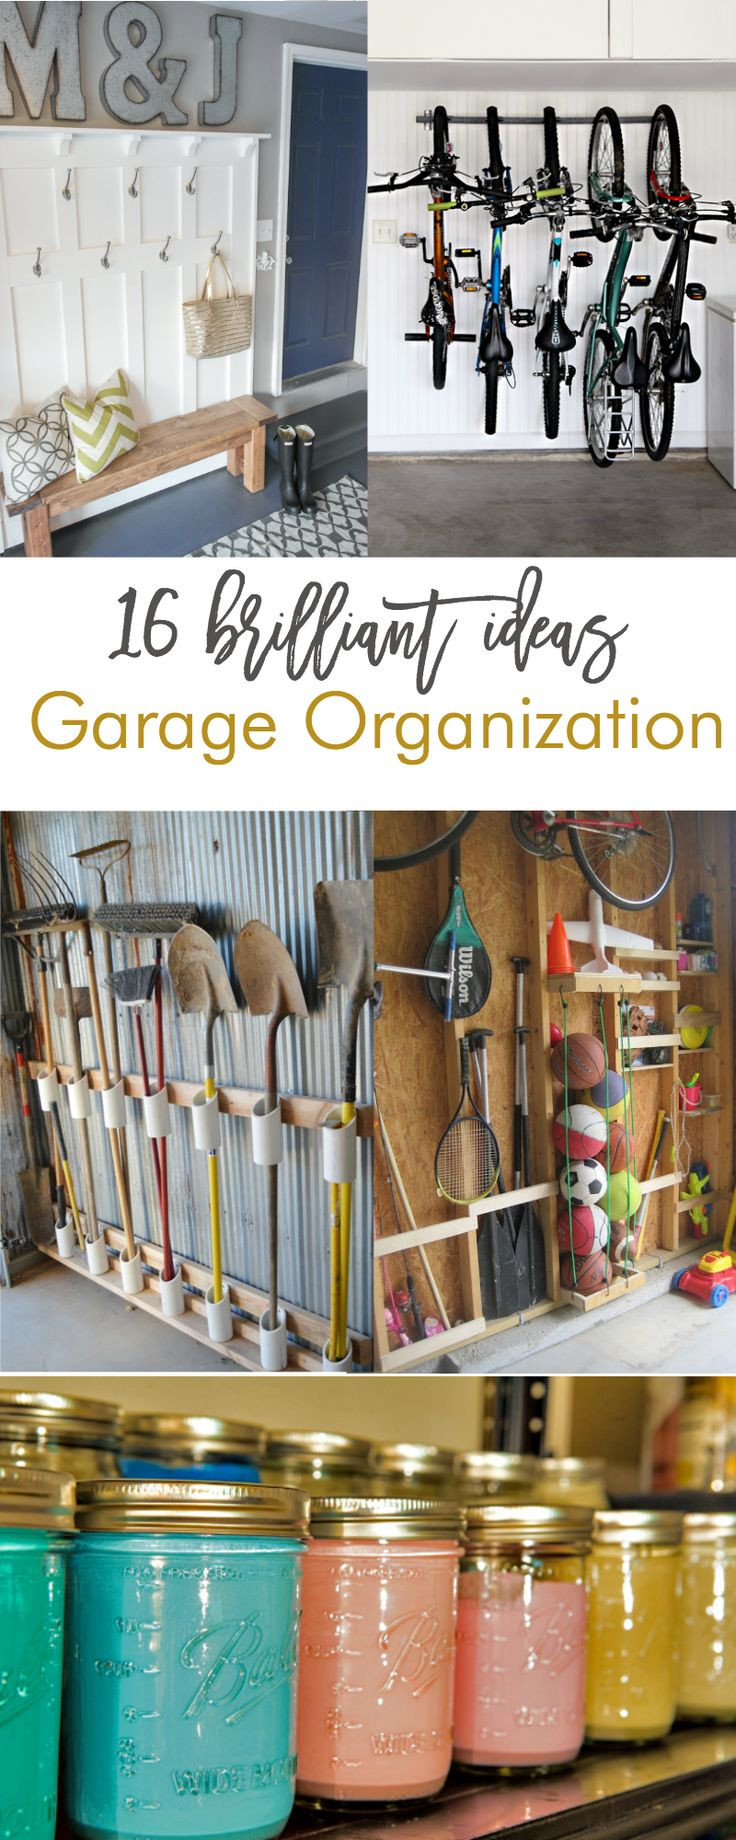 Garage Organization Ideas Diy
 144 best garage storage solutions images on Pinterest